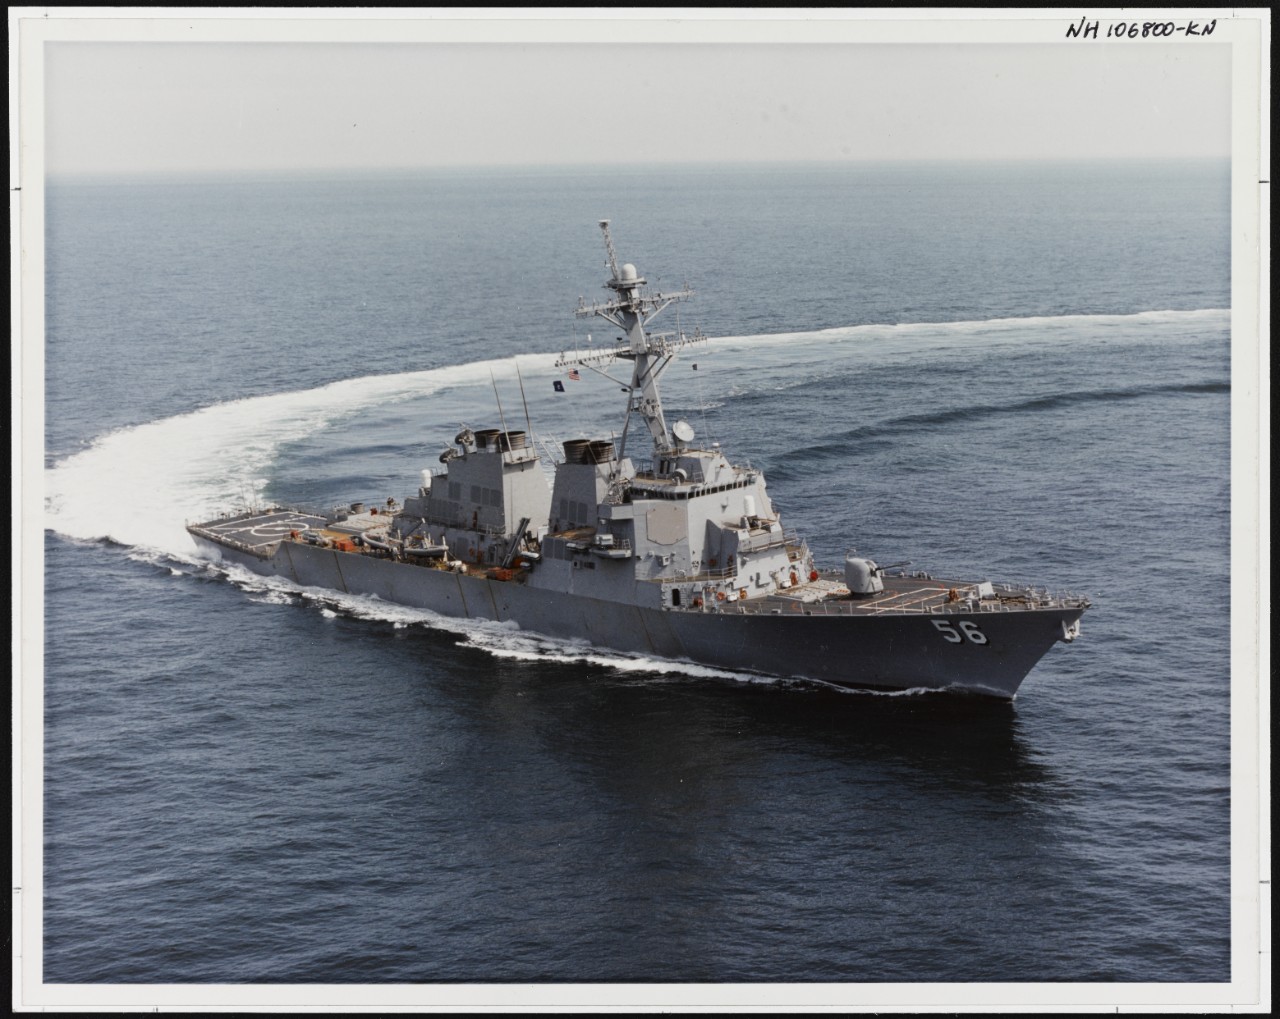 Photo # NH 106800-KN USS John S. McCain